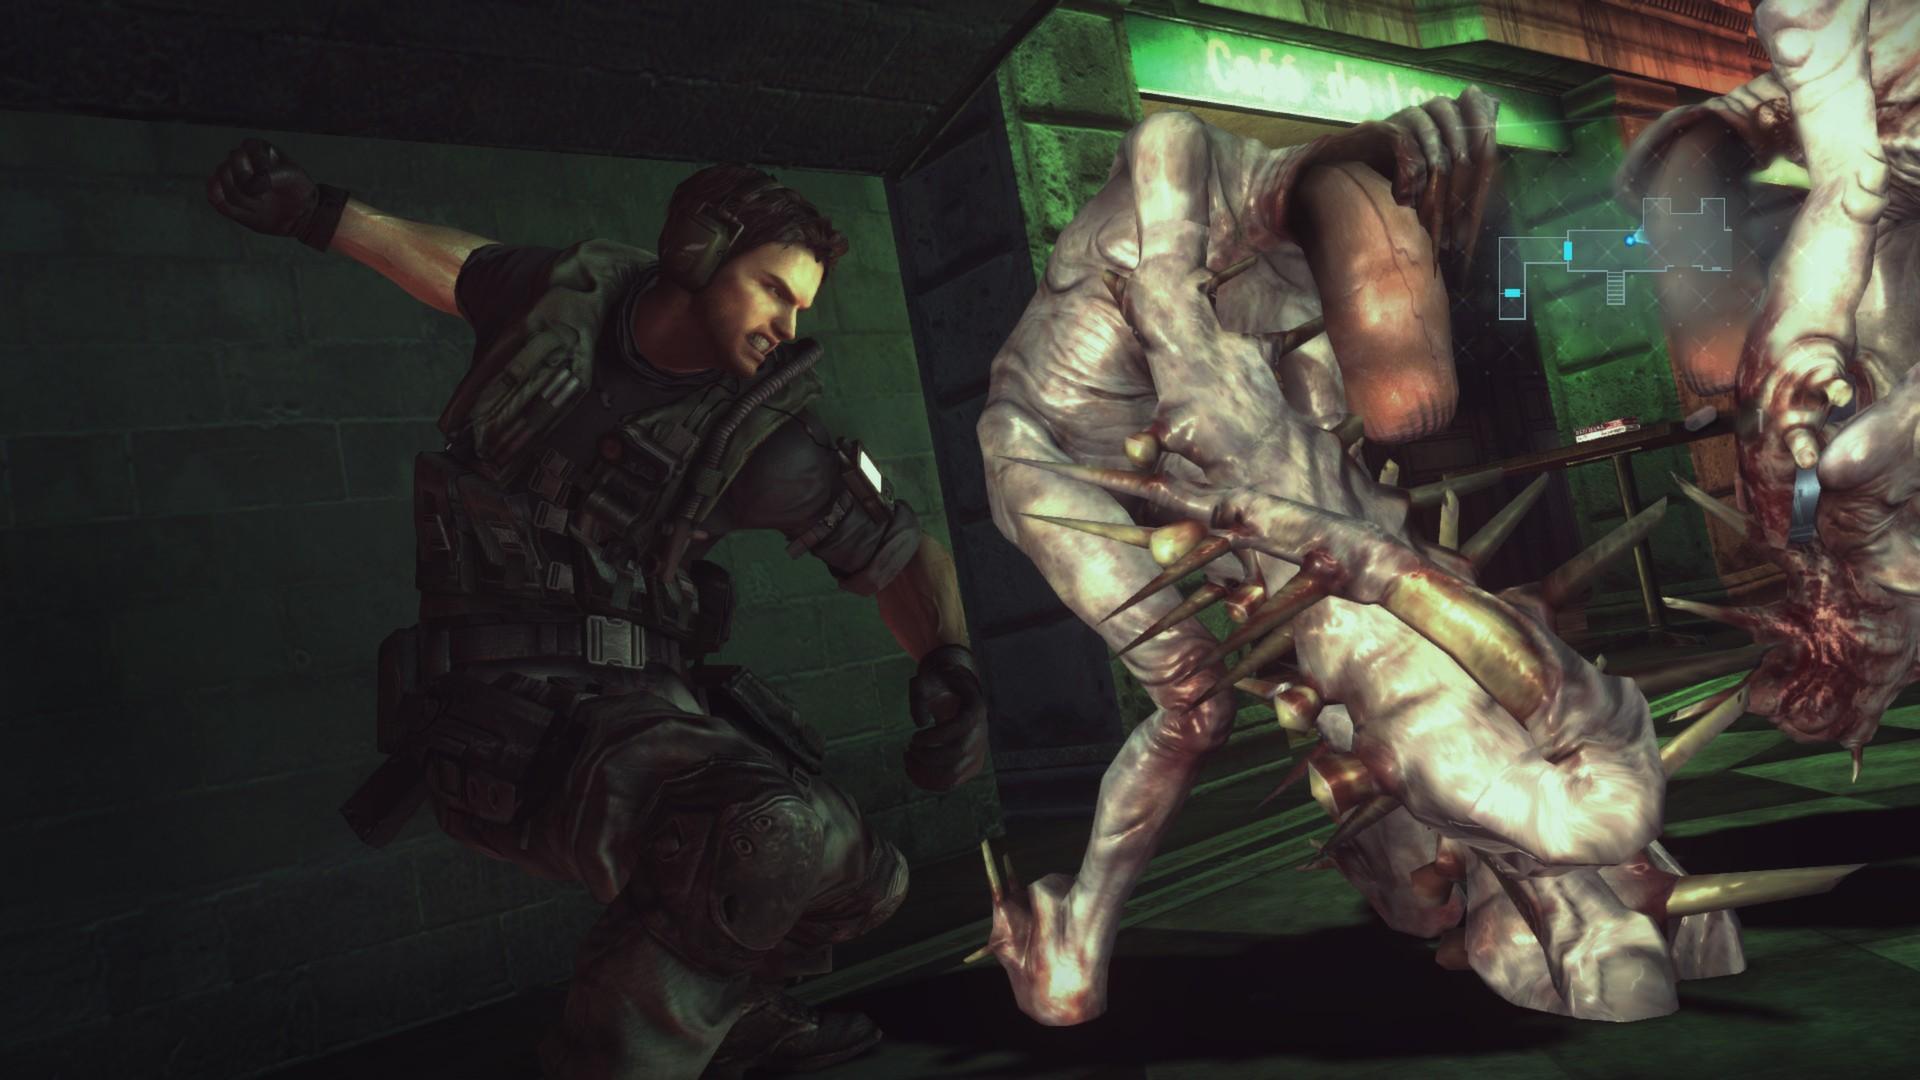 Screenshot №16 from game Resident Evil Revelations